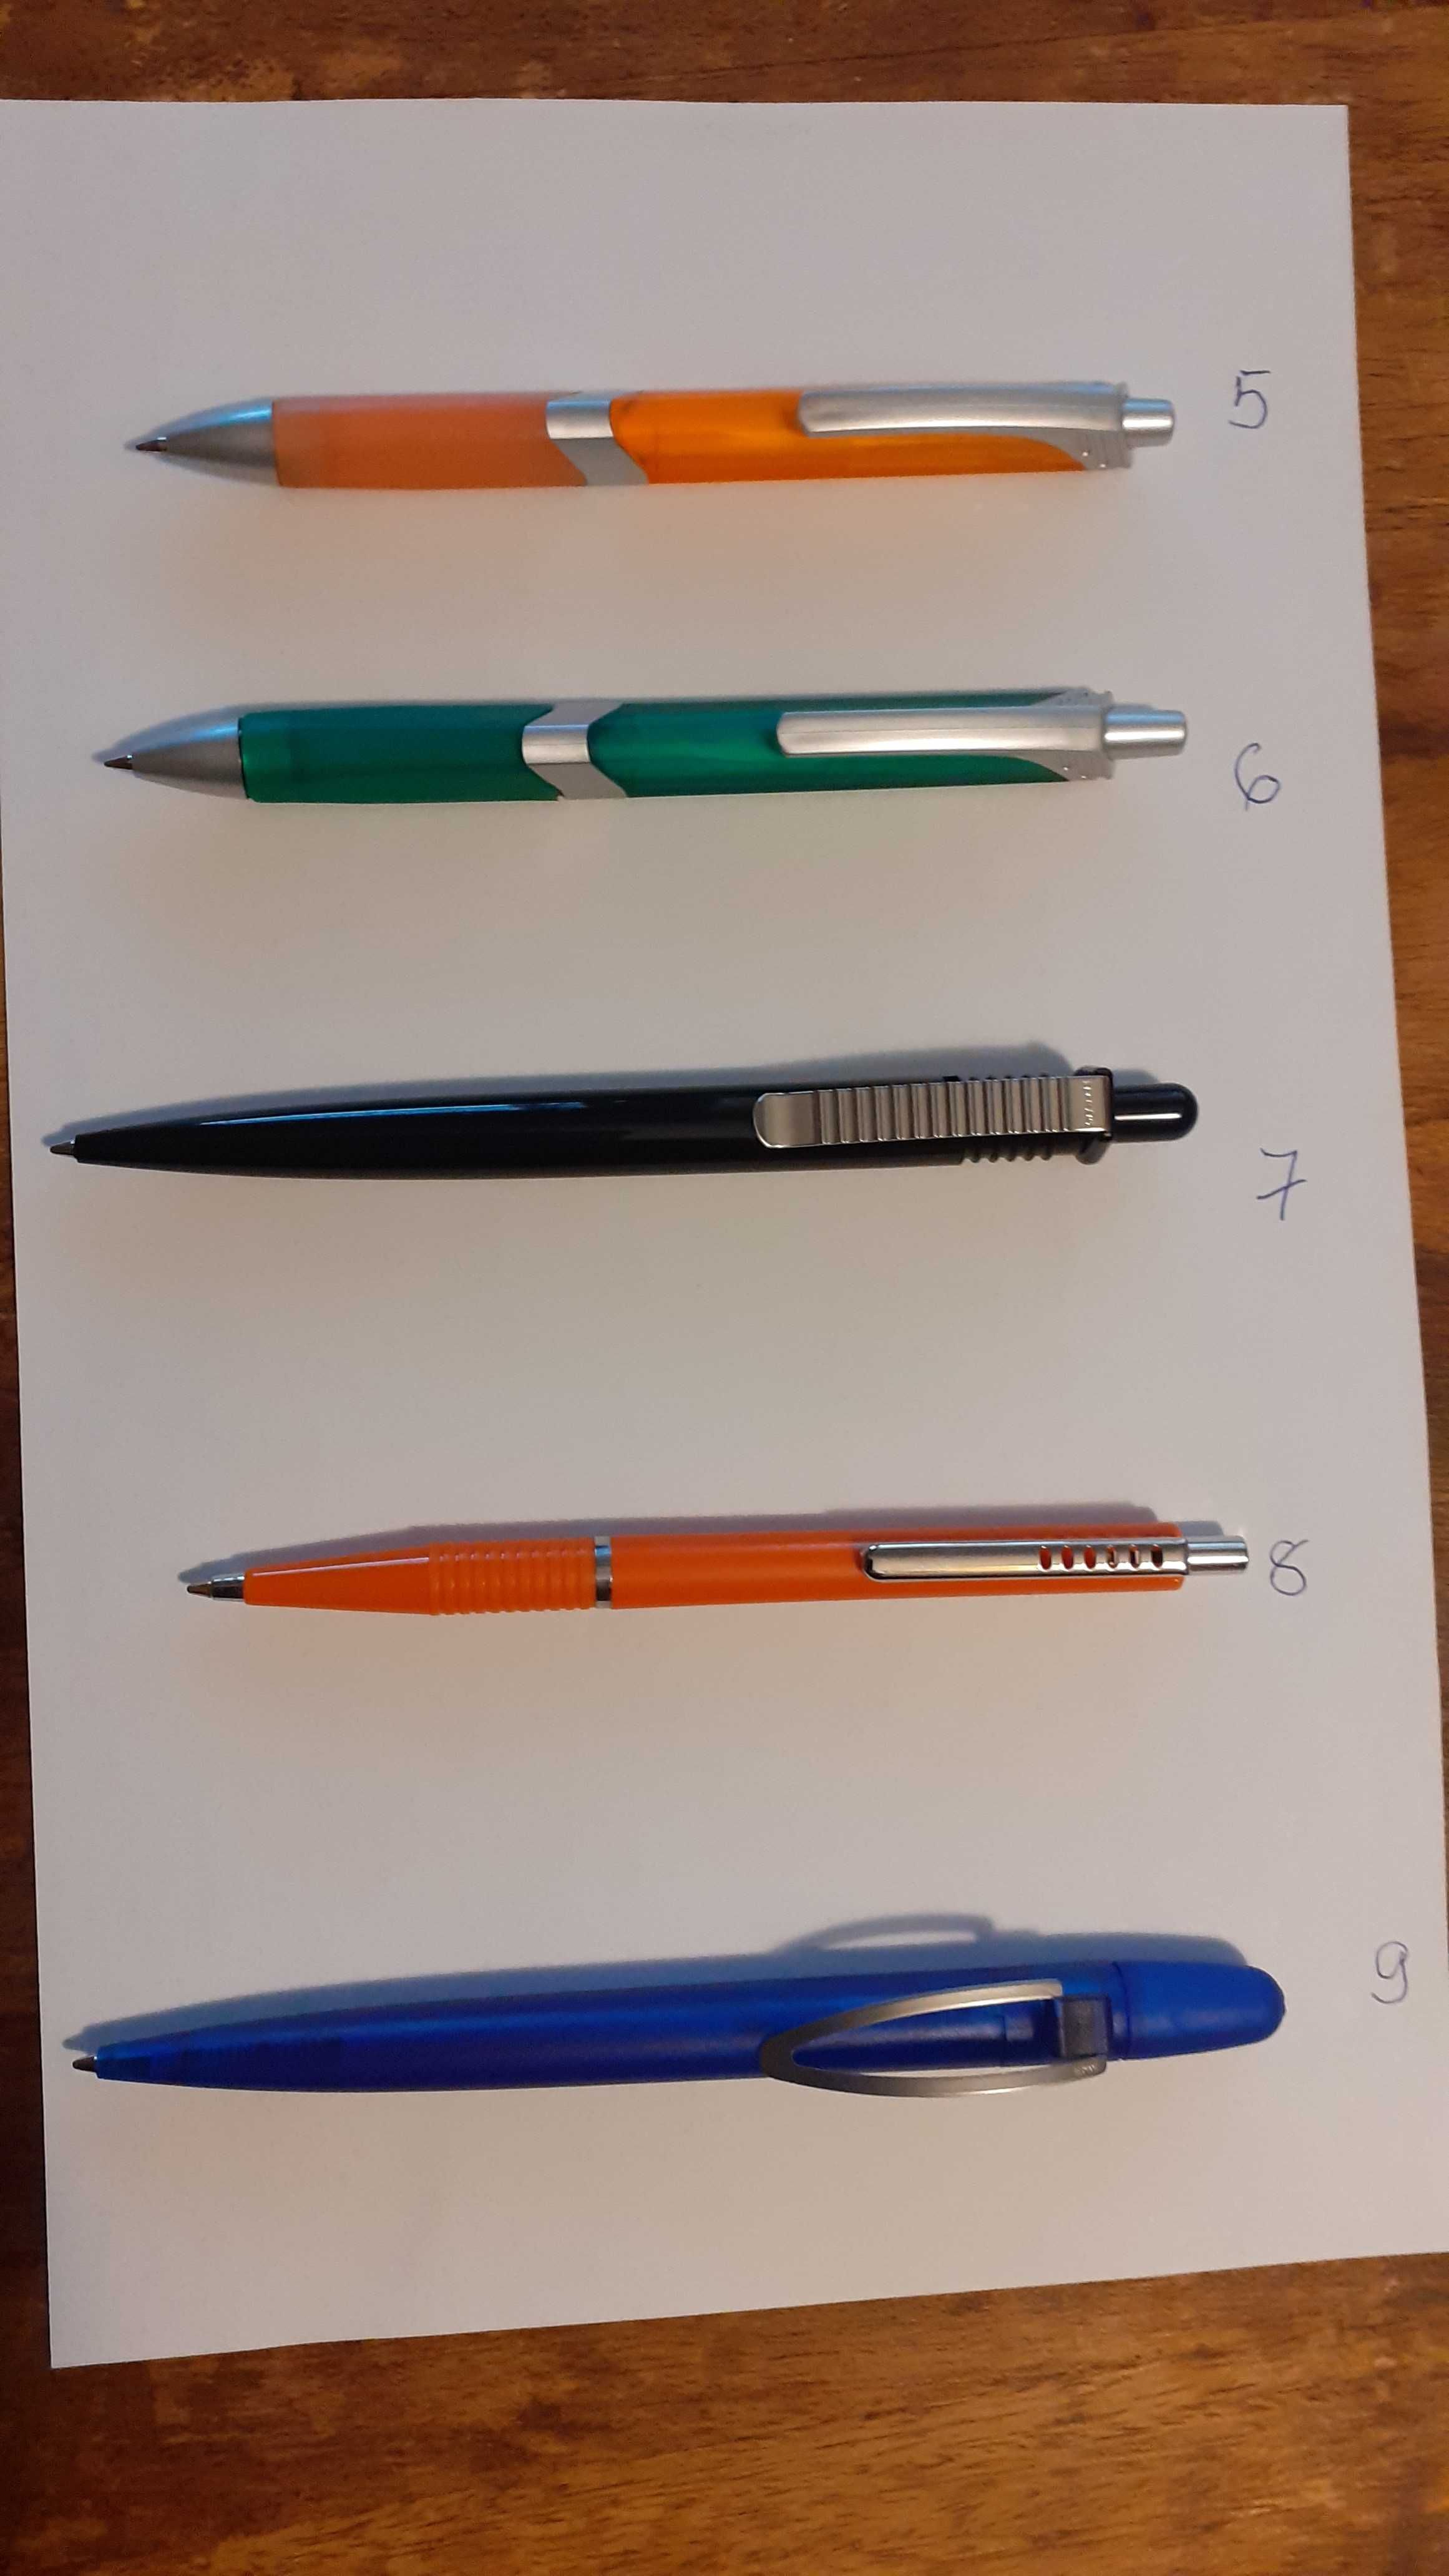 химикалки евтини произведени в Германия - разпродажба